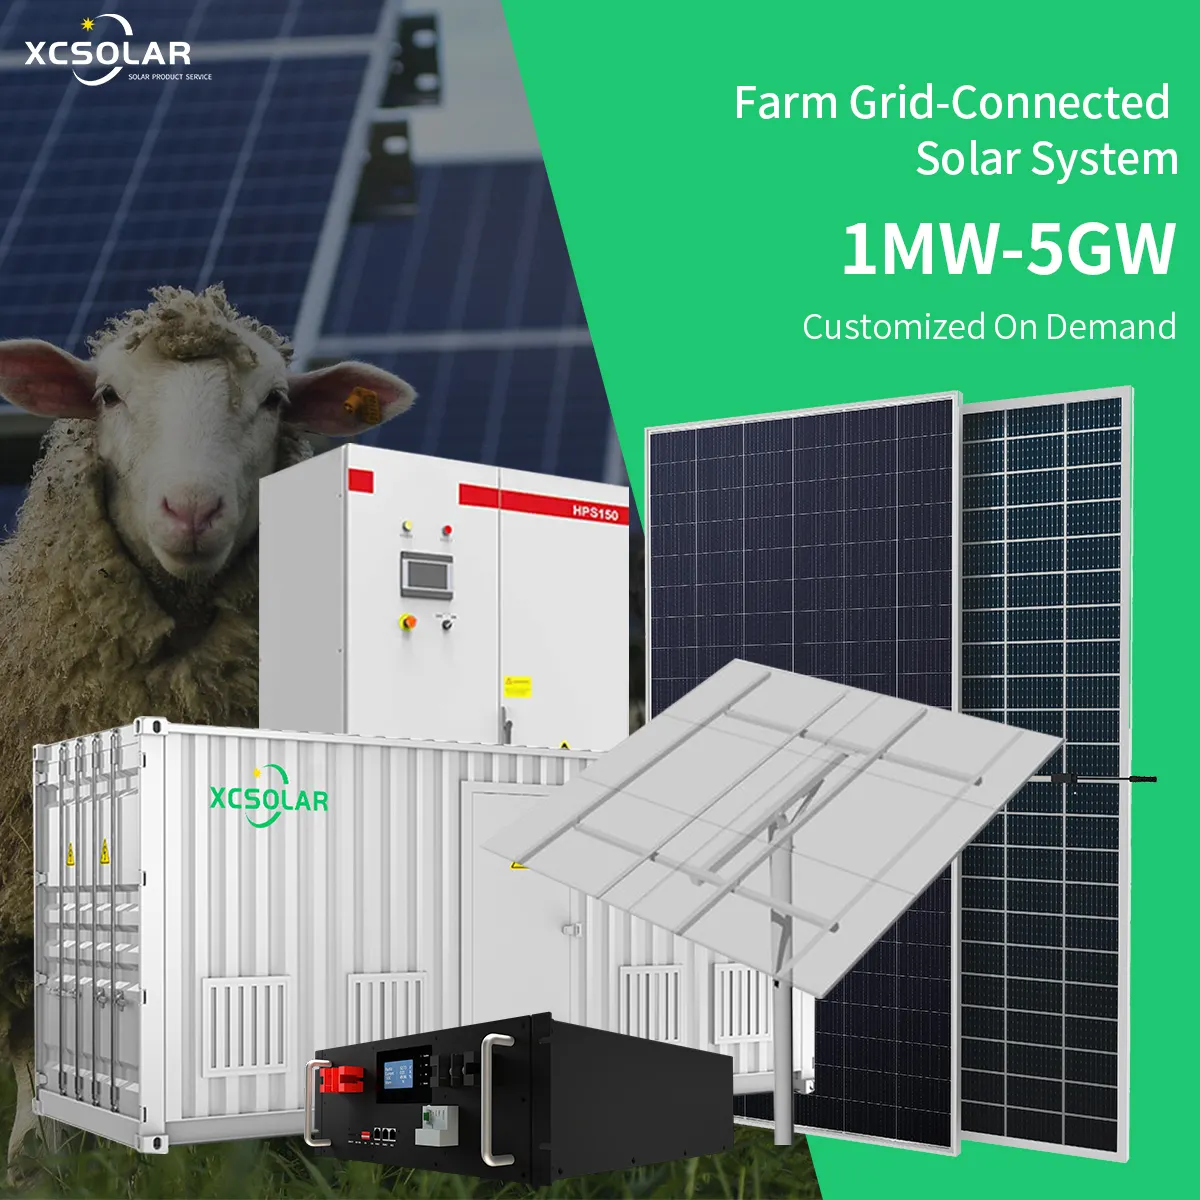 نظام تركيب الطاقة الشمسية الصغير للمزارعين باستخدام الأرض لألواح الطاقة الشمسية والحصول على محاصيل نظام طاقة كهروضوئية للمزرعة الزراعية